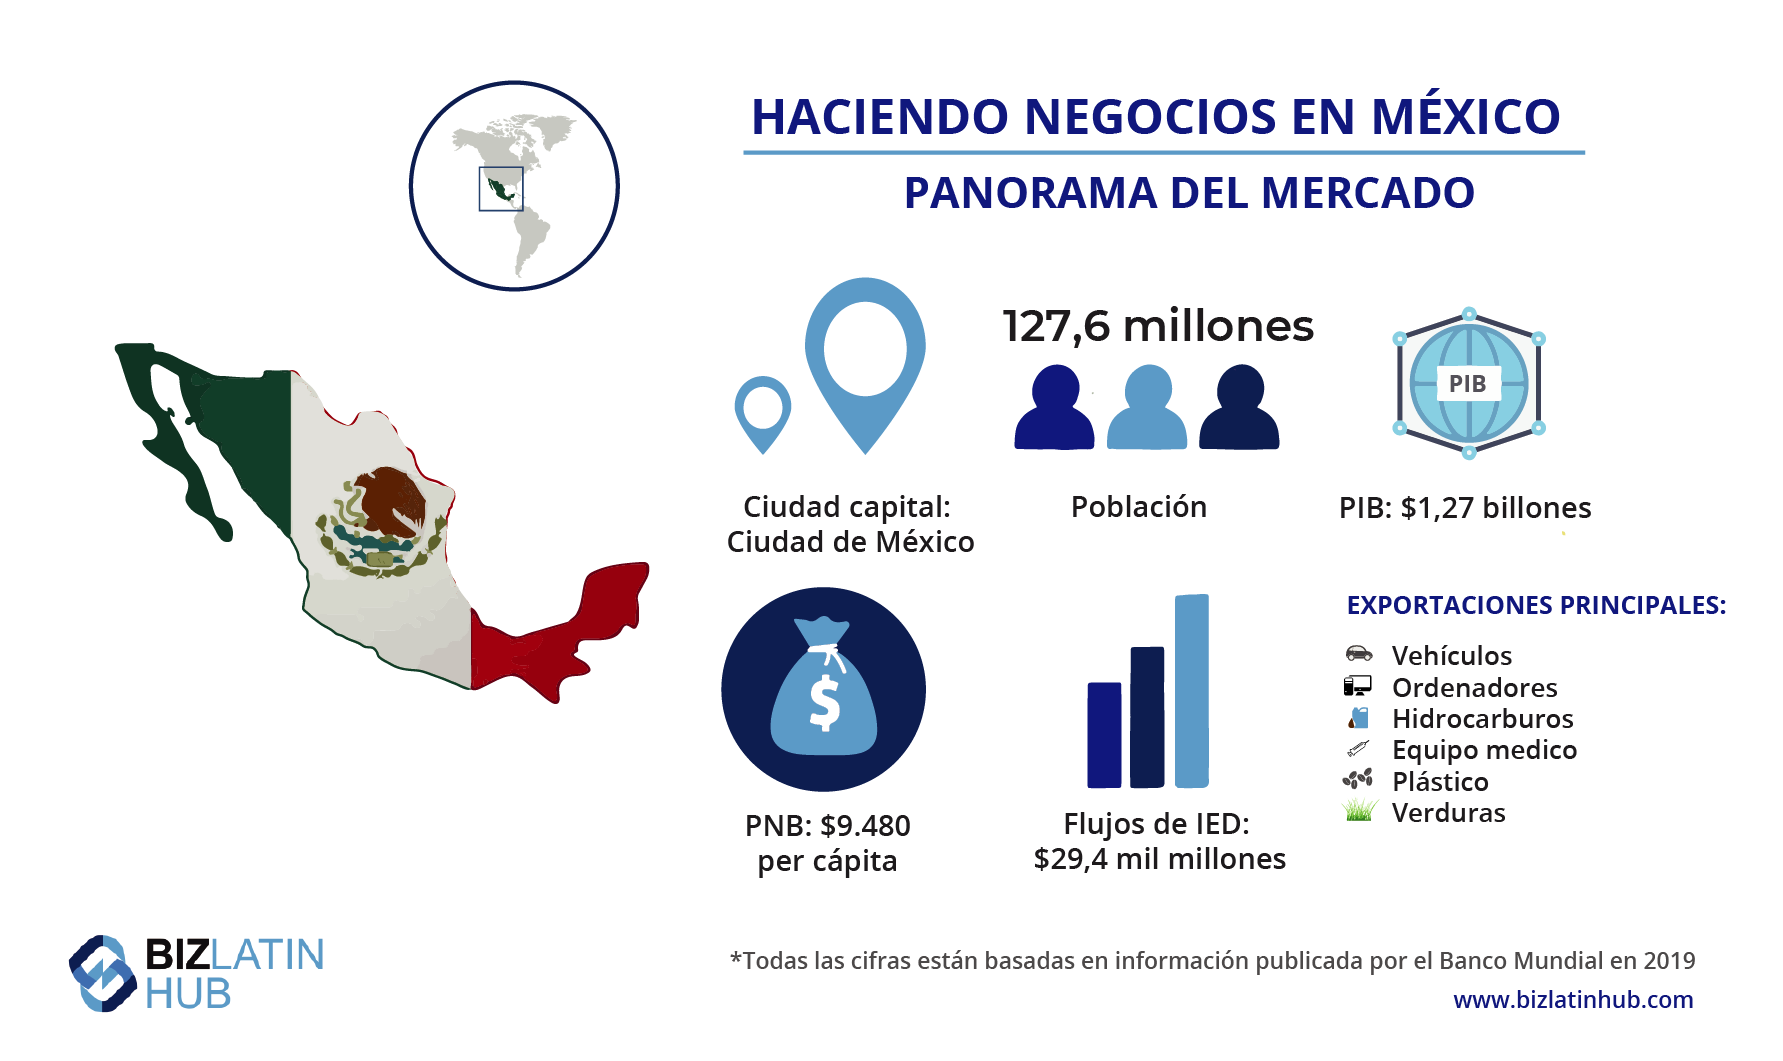 Panorama del mercado de México, información que puede ser relevante para quien quiera formar una sucursal en México. 